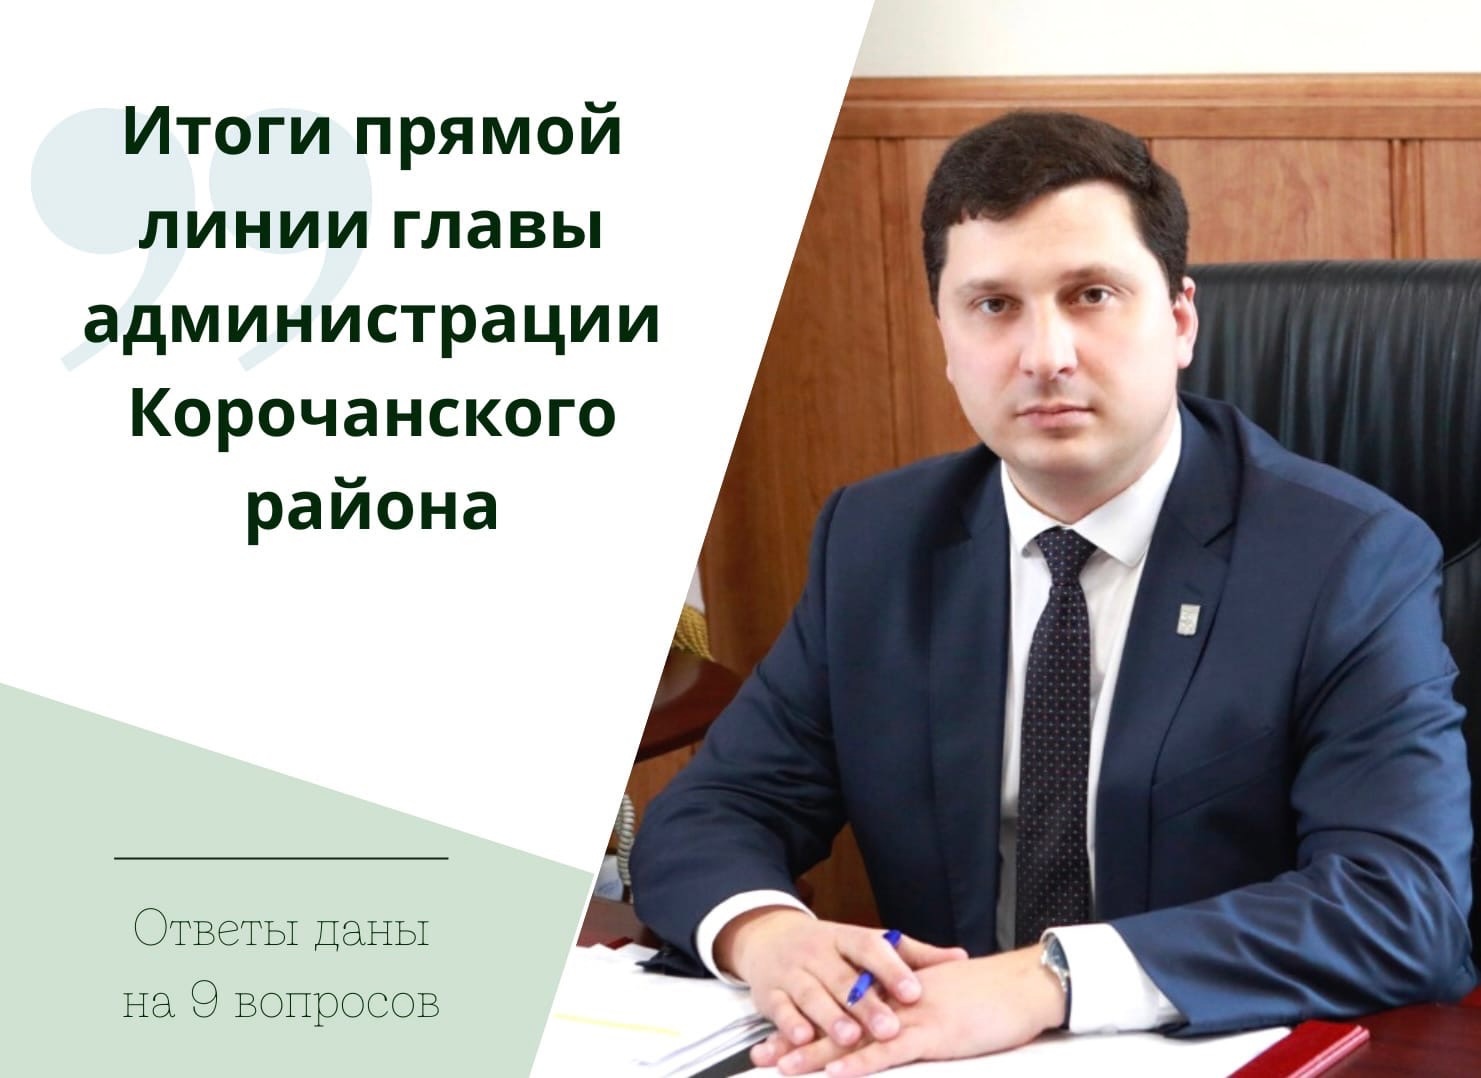 В ходе прямой линии главы администрации района Николая Нестерова были даны разъяснения на 9 вопросов.